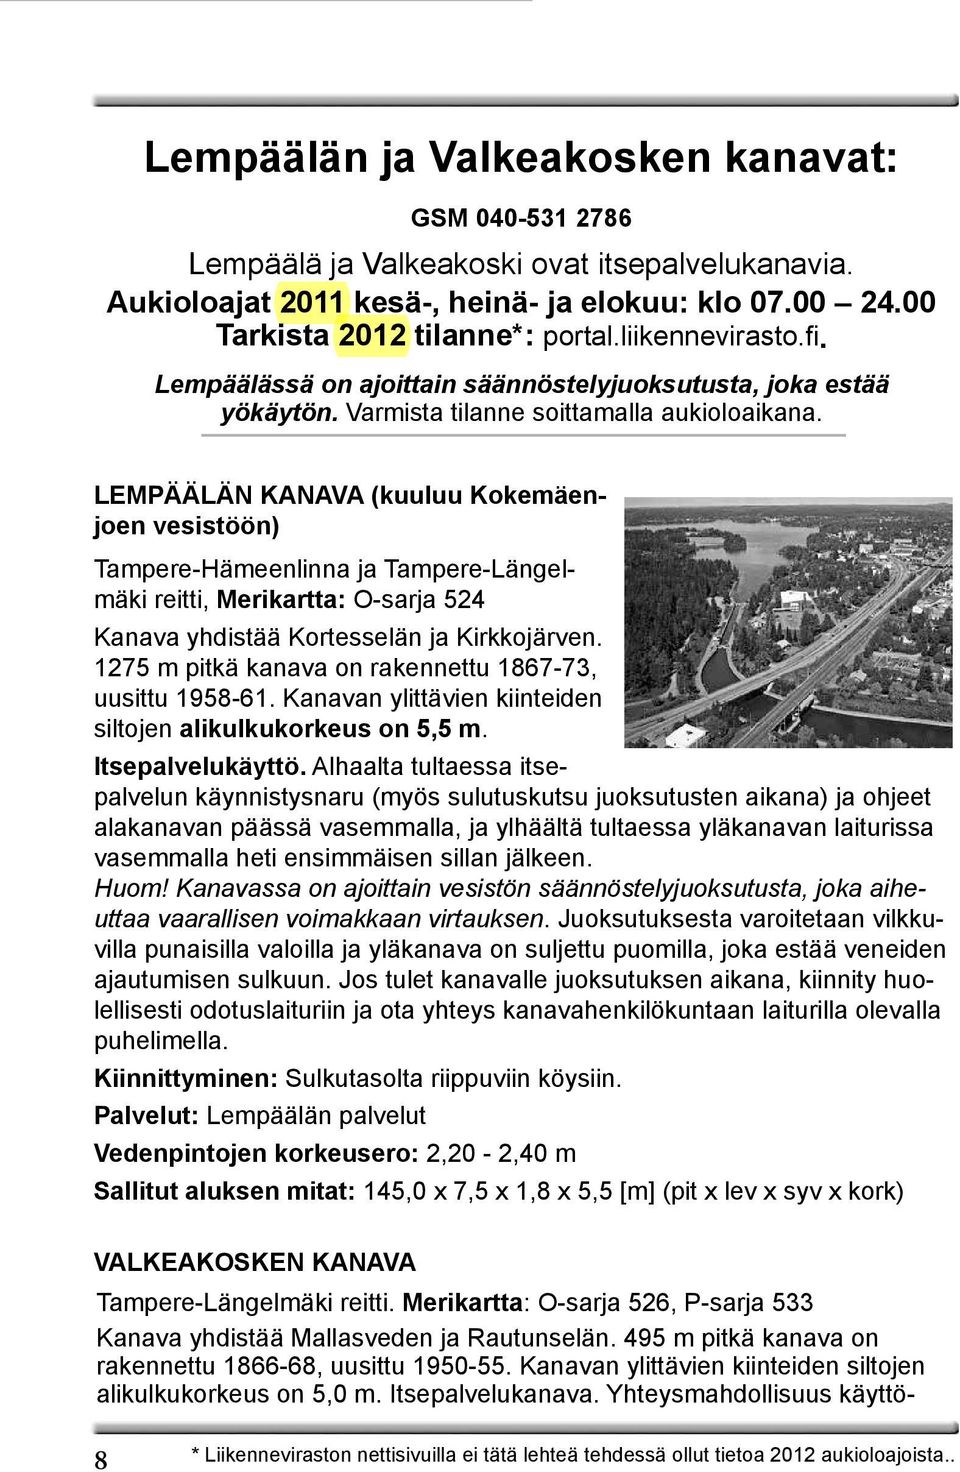 LEMPÄÄLÄN KANAVA (kuuluu Kokemäenjoen vesistöön) Tampere-Hämeenlinna ja Tampere-Längelmäki reitti, Merikartta: O-sarja 524 Kanava yhdistää Kortesselän ja Kirkkojärven.